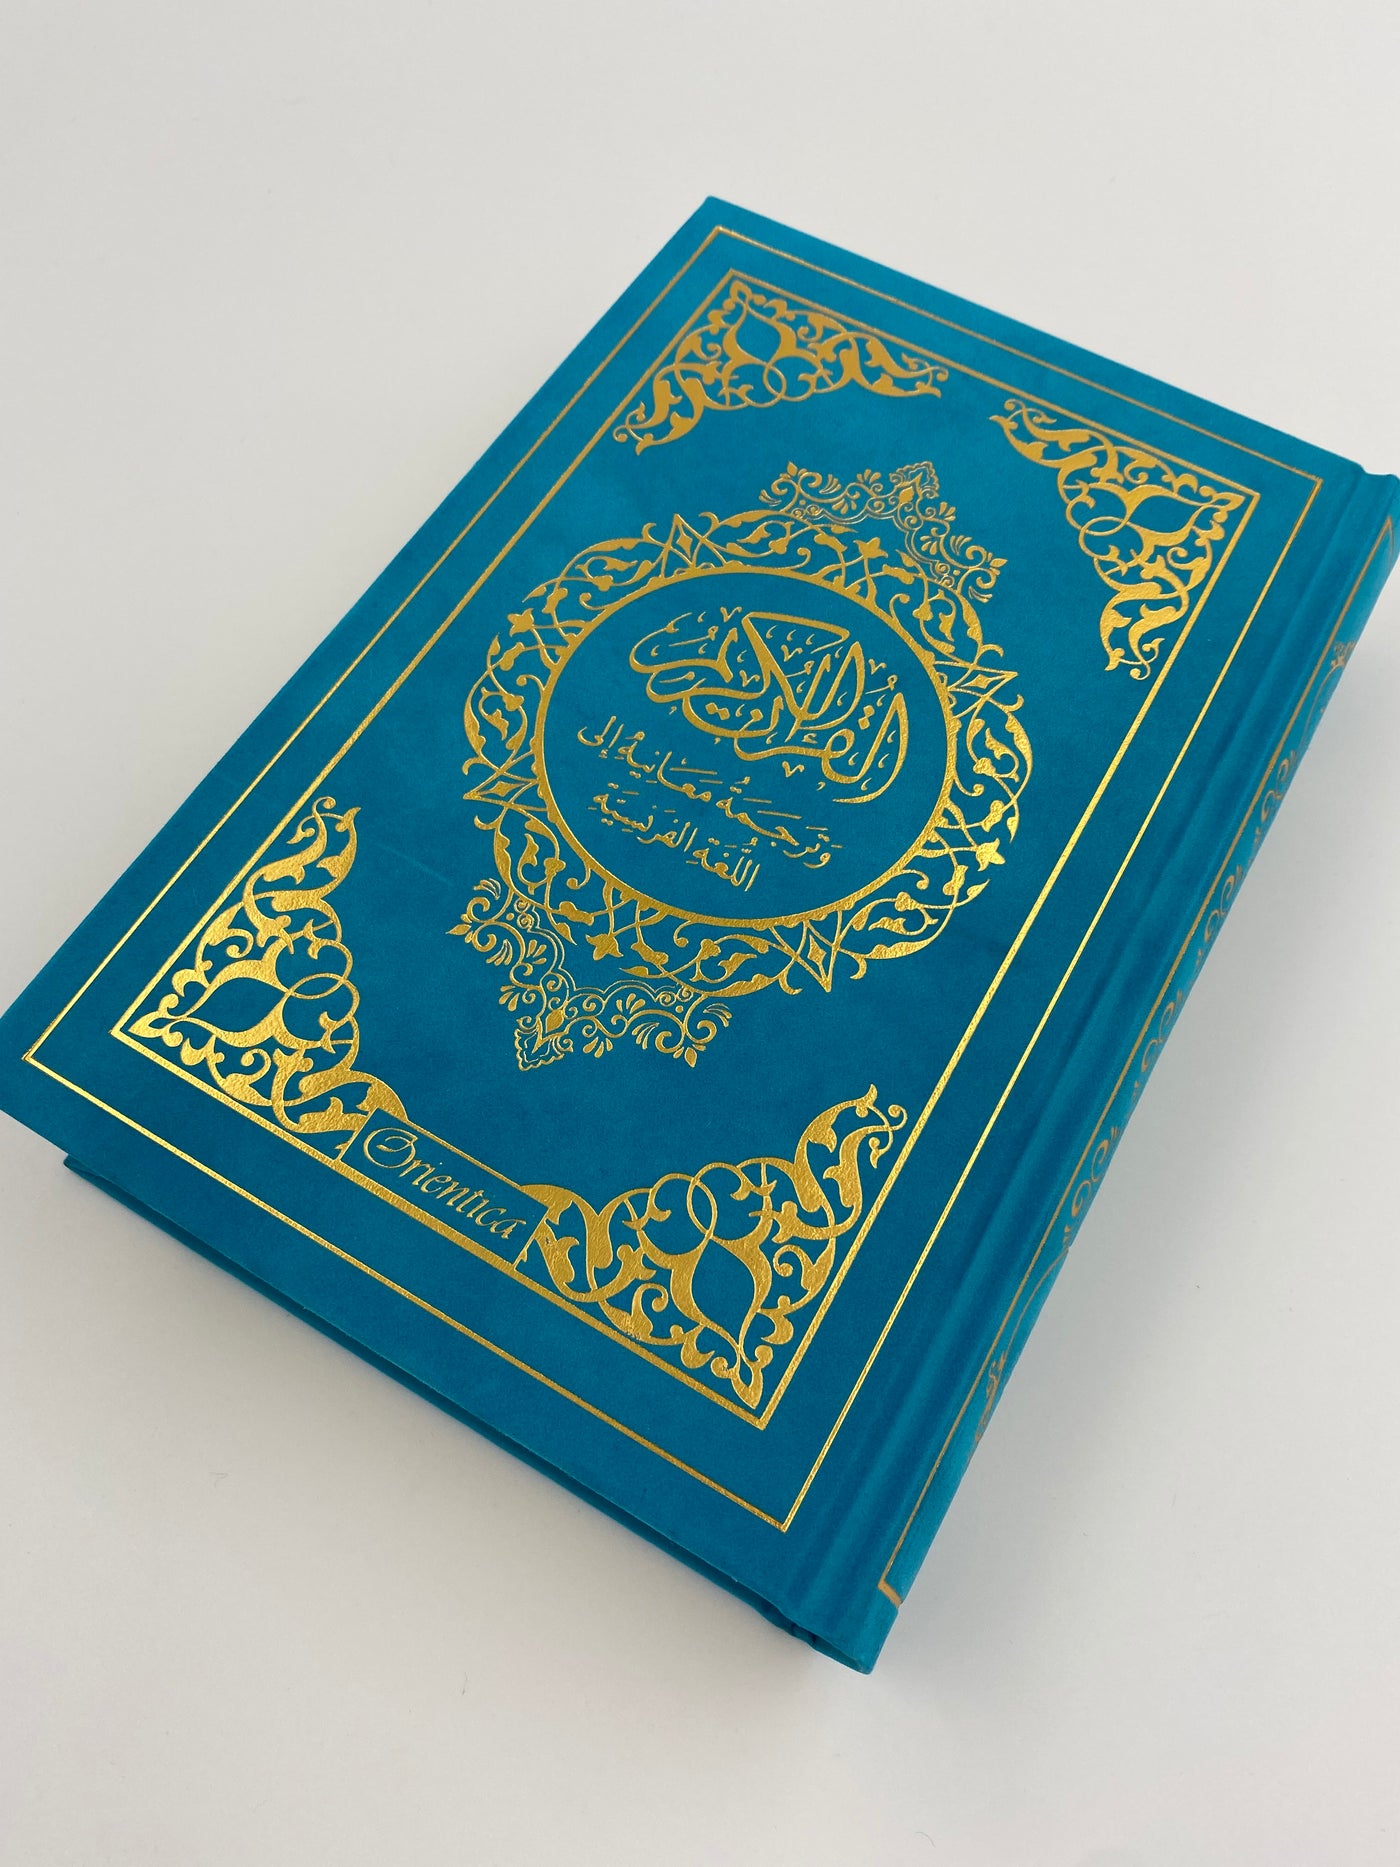 Der Edle Koran und die französische Übersetzung seiner Bedeutungen Türkisblau